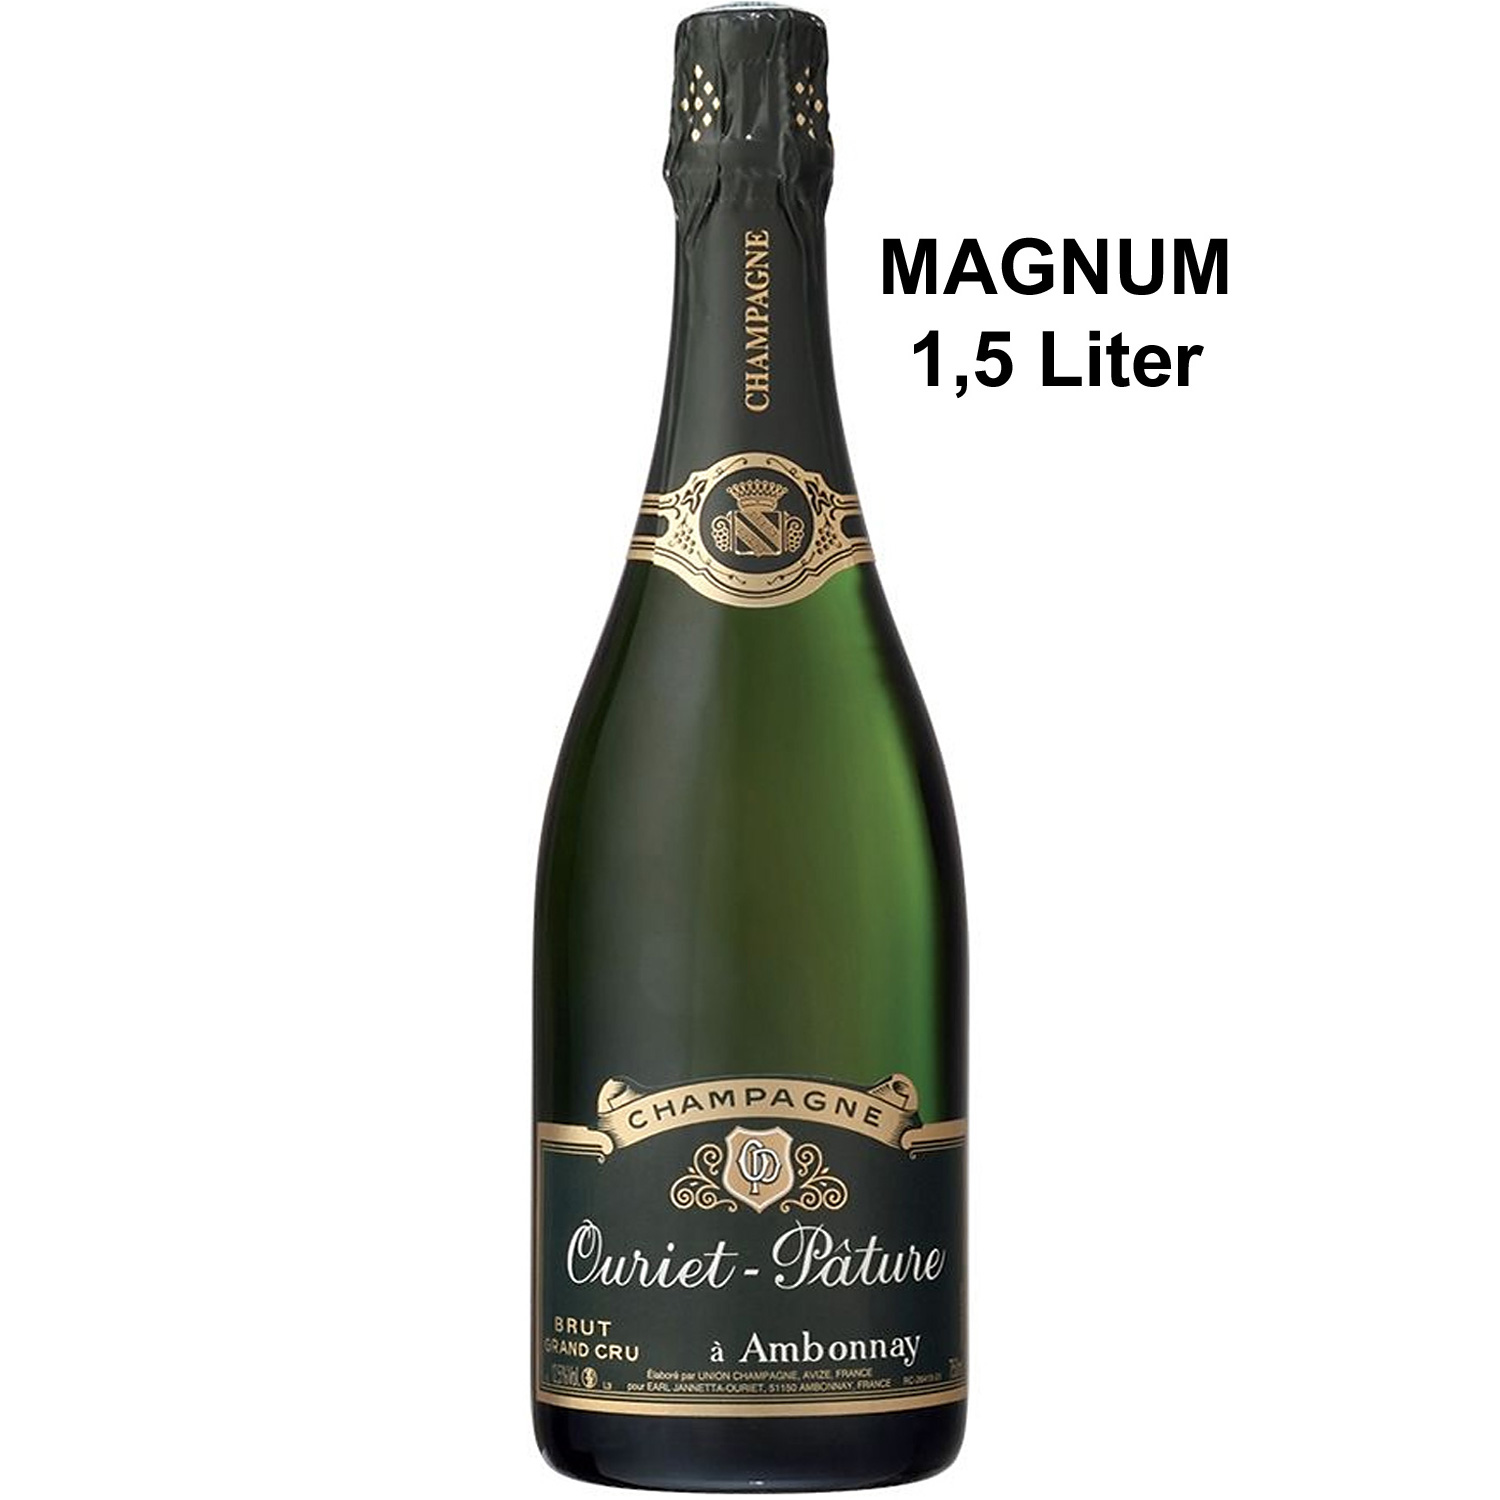 Champagner Ouriet - Pature Brut Grand Cru Magnum 